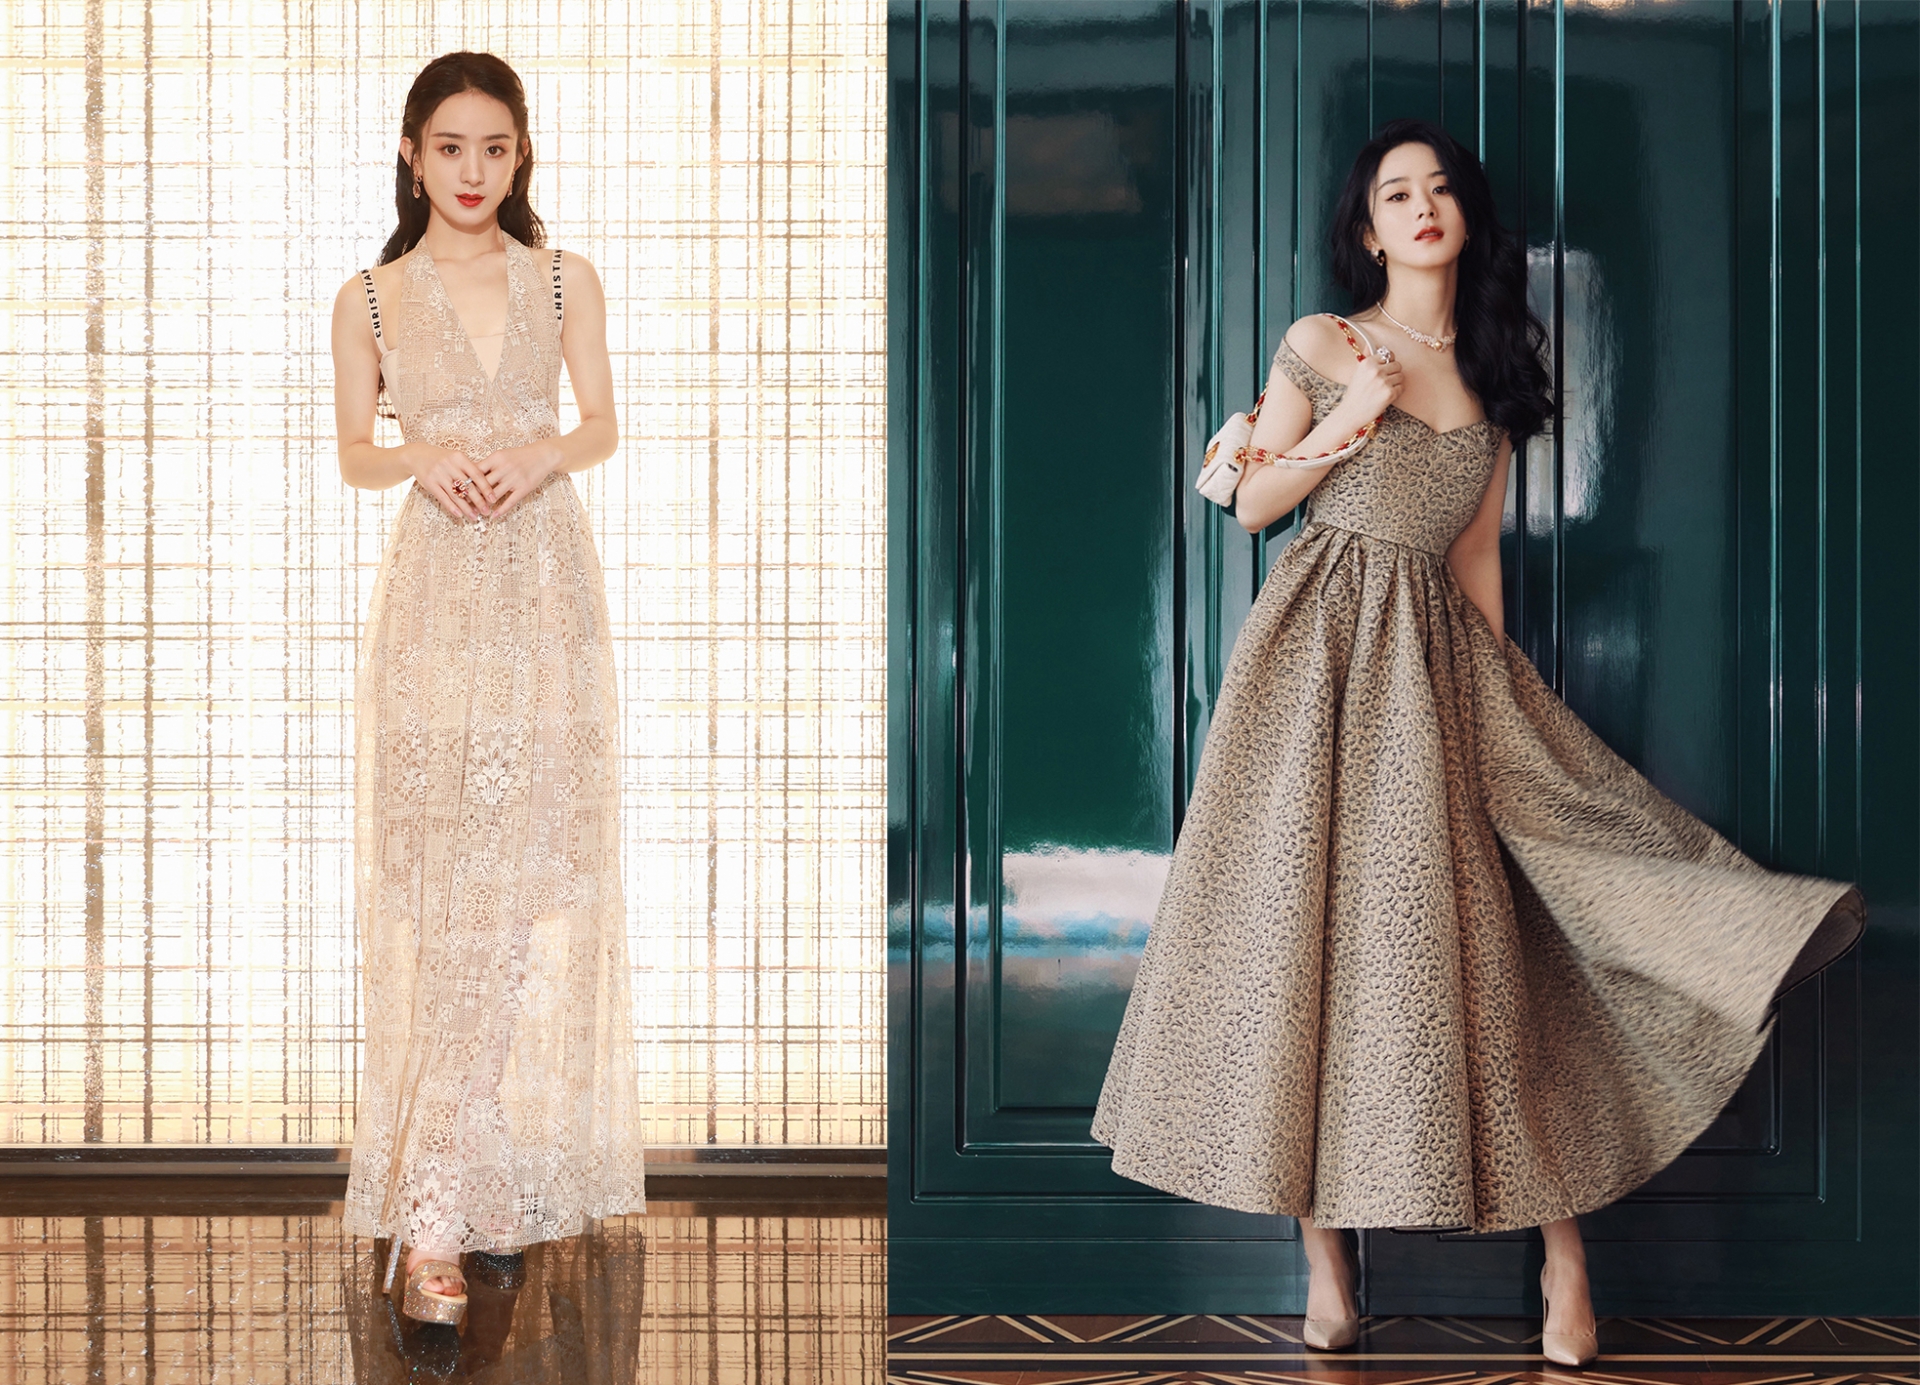 Là đại sứ Dior tại Trung Quốc, Triệu Lệ Dĩnh chứng minh mình phù hợp với tinh thần của nhà mốt qua những mẫu váy thương hiệu. Đầm da beo cá tính hay ren trắng sang trọng đều được 'Tiểu Cốt đầu' cân đẹp.